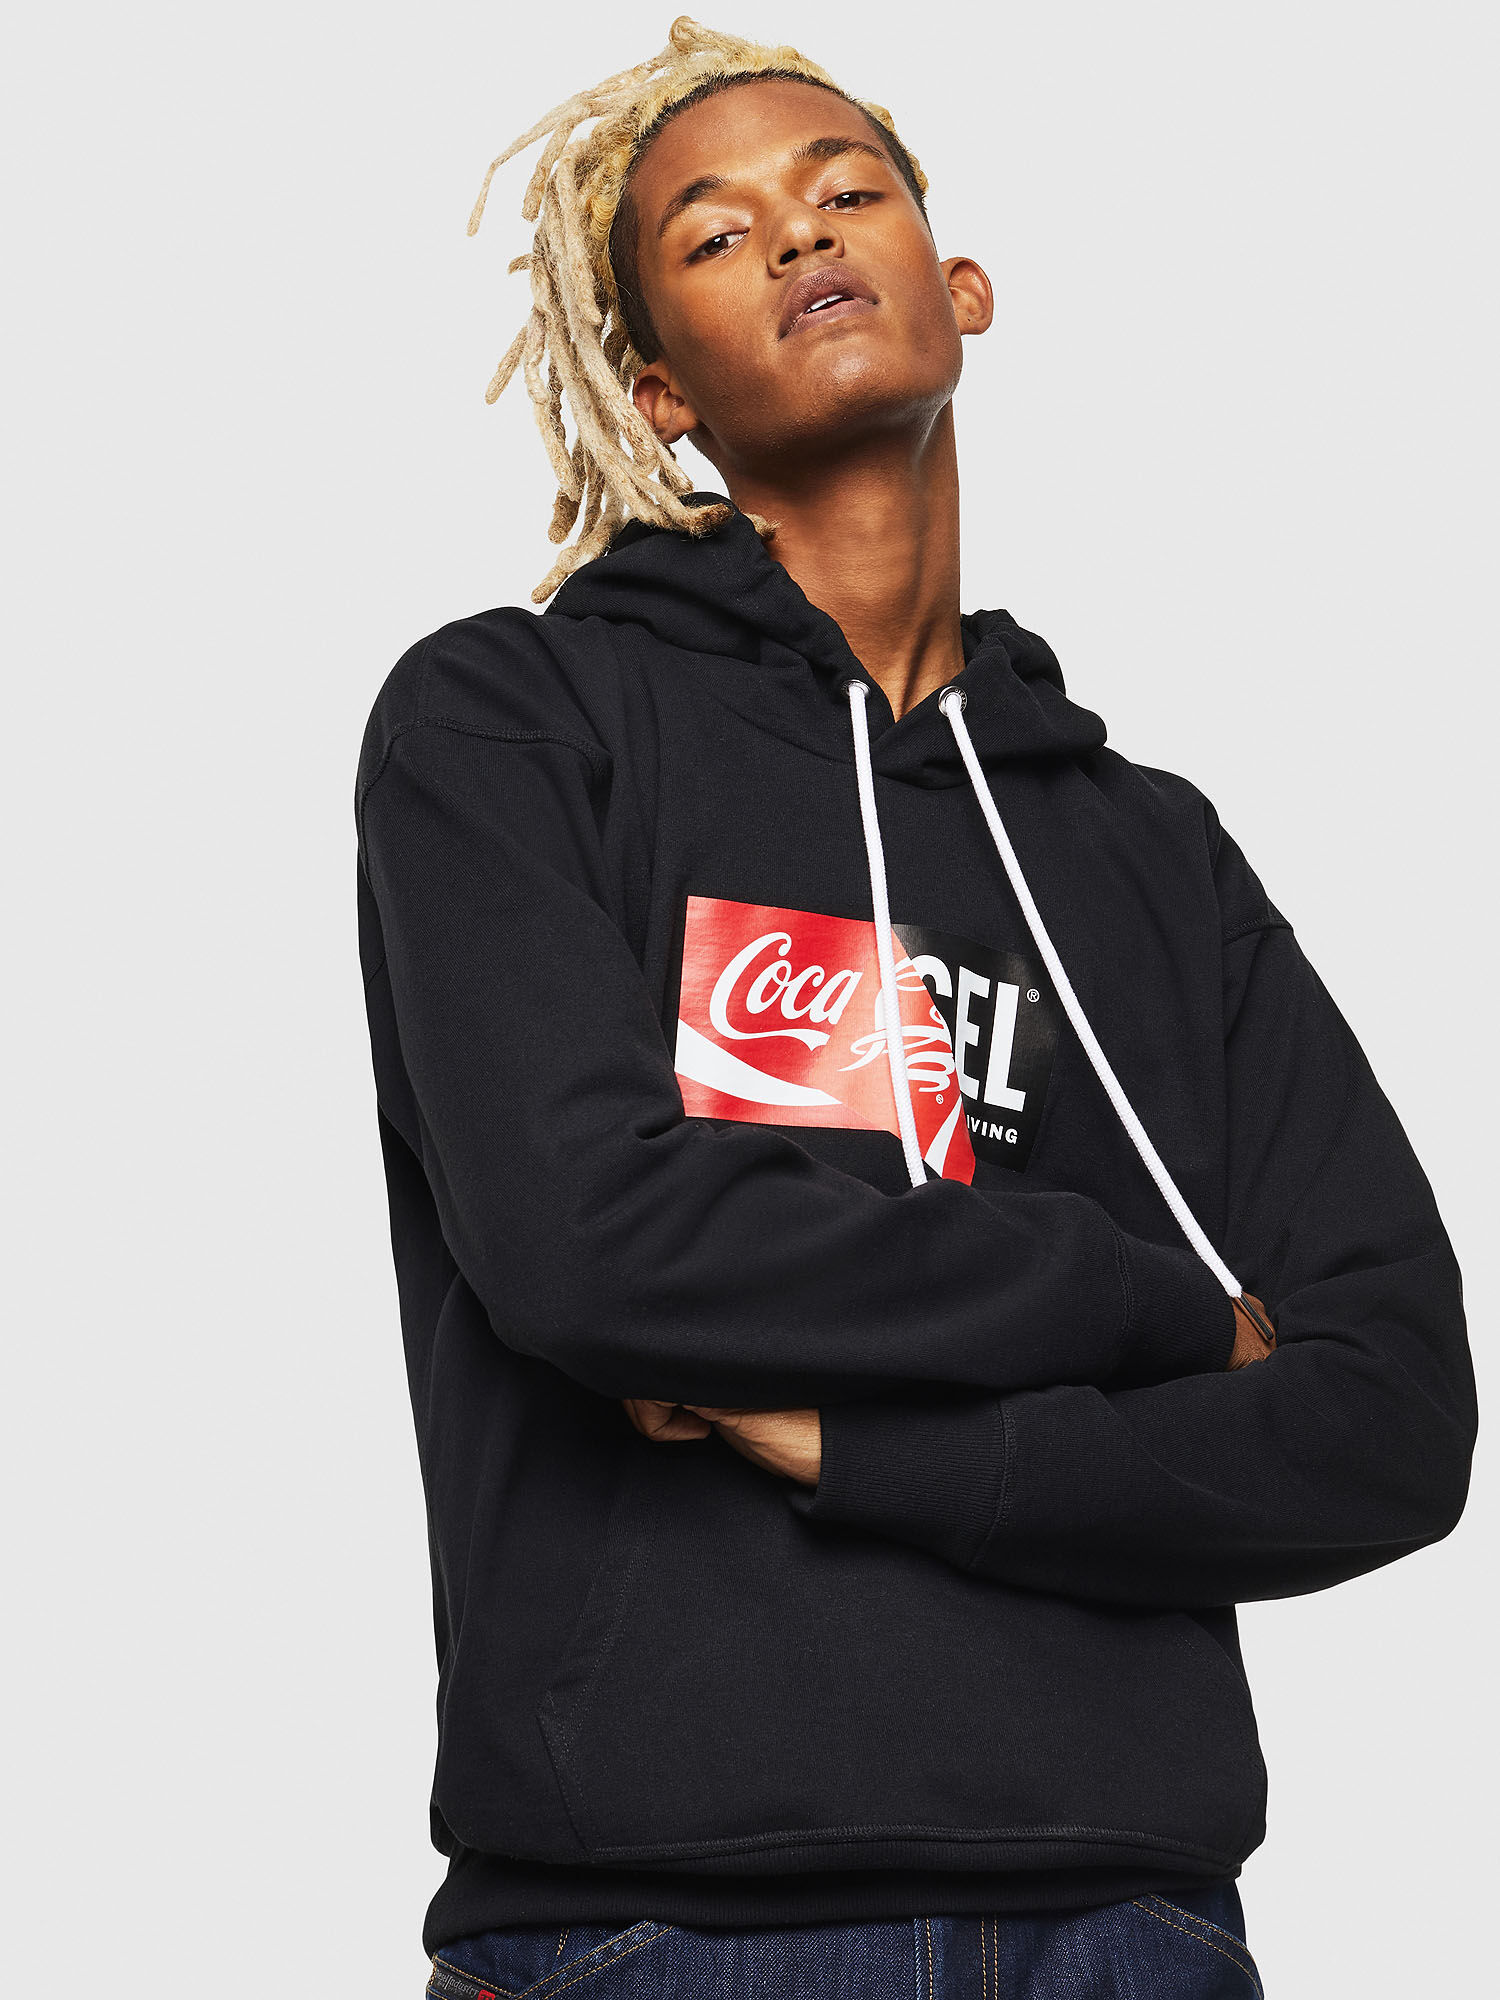 coca cola black hoodie